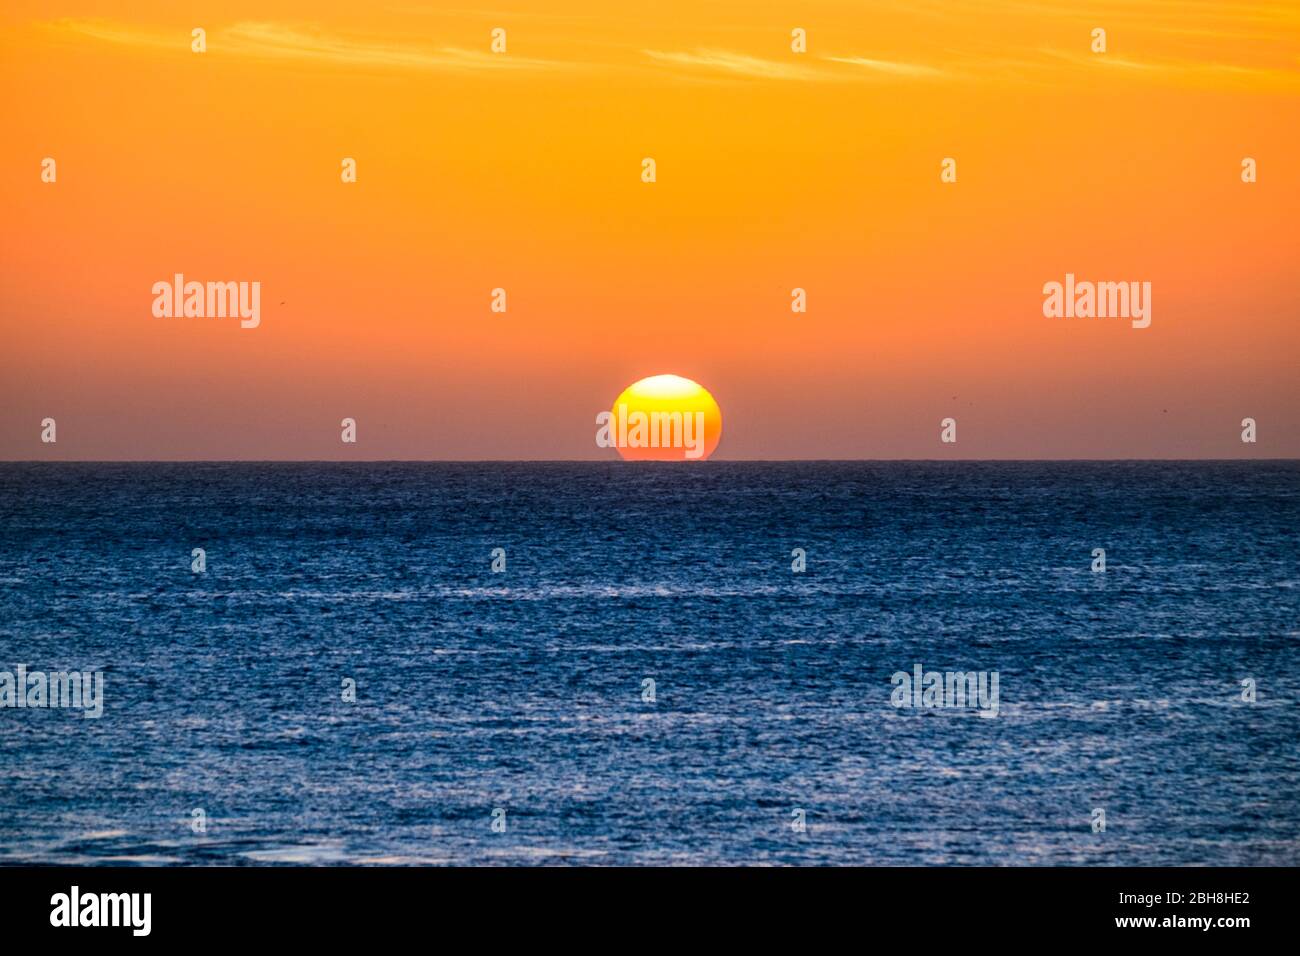 Perfekter Sonnenuntergang Moment, wenn die Sonne das Wasser in der Mitte des Ozeans berühren im Sommerurlaub tropische Insel - romantisch und schön natürlichen Hintergrund für Urlaub Konzept Stockfoto